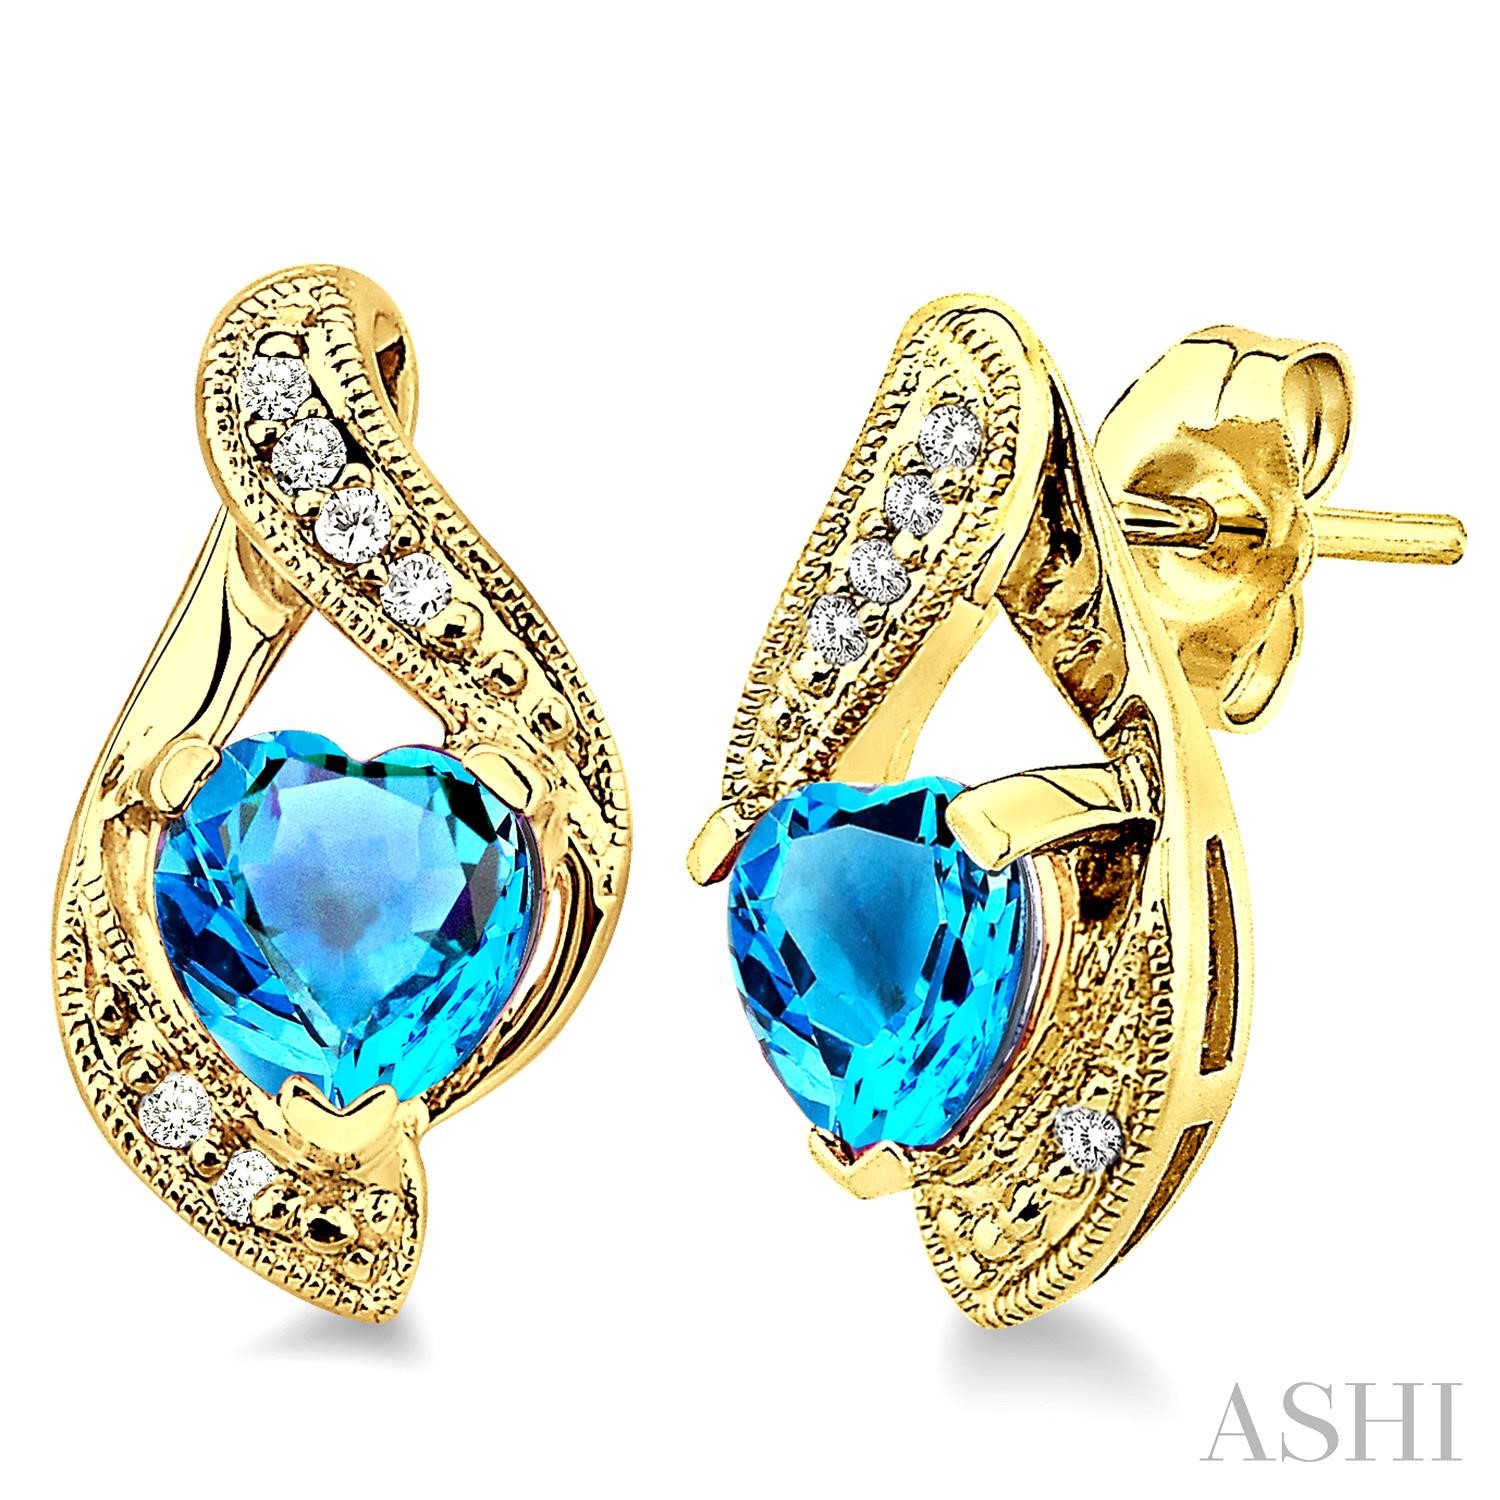 Heart Shape Gemstone & Diamond Earrings
6x6mm Heart Shape Blue Topaz and 1/20 Ctw Single Cut Diamond Earrings in 14K Yellow Gold